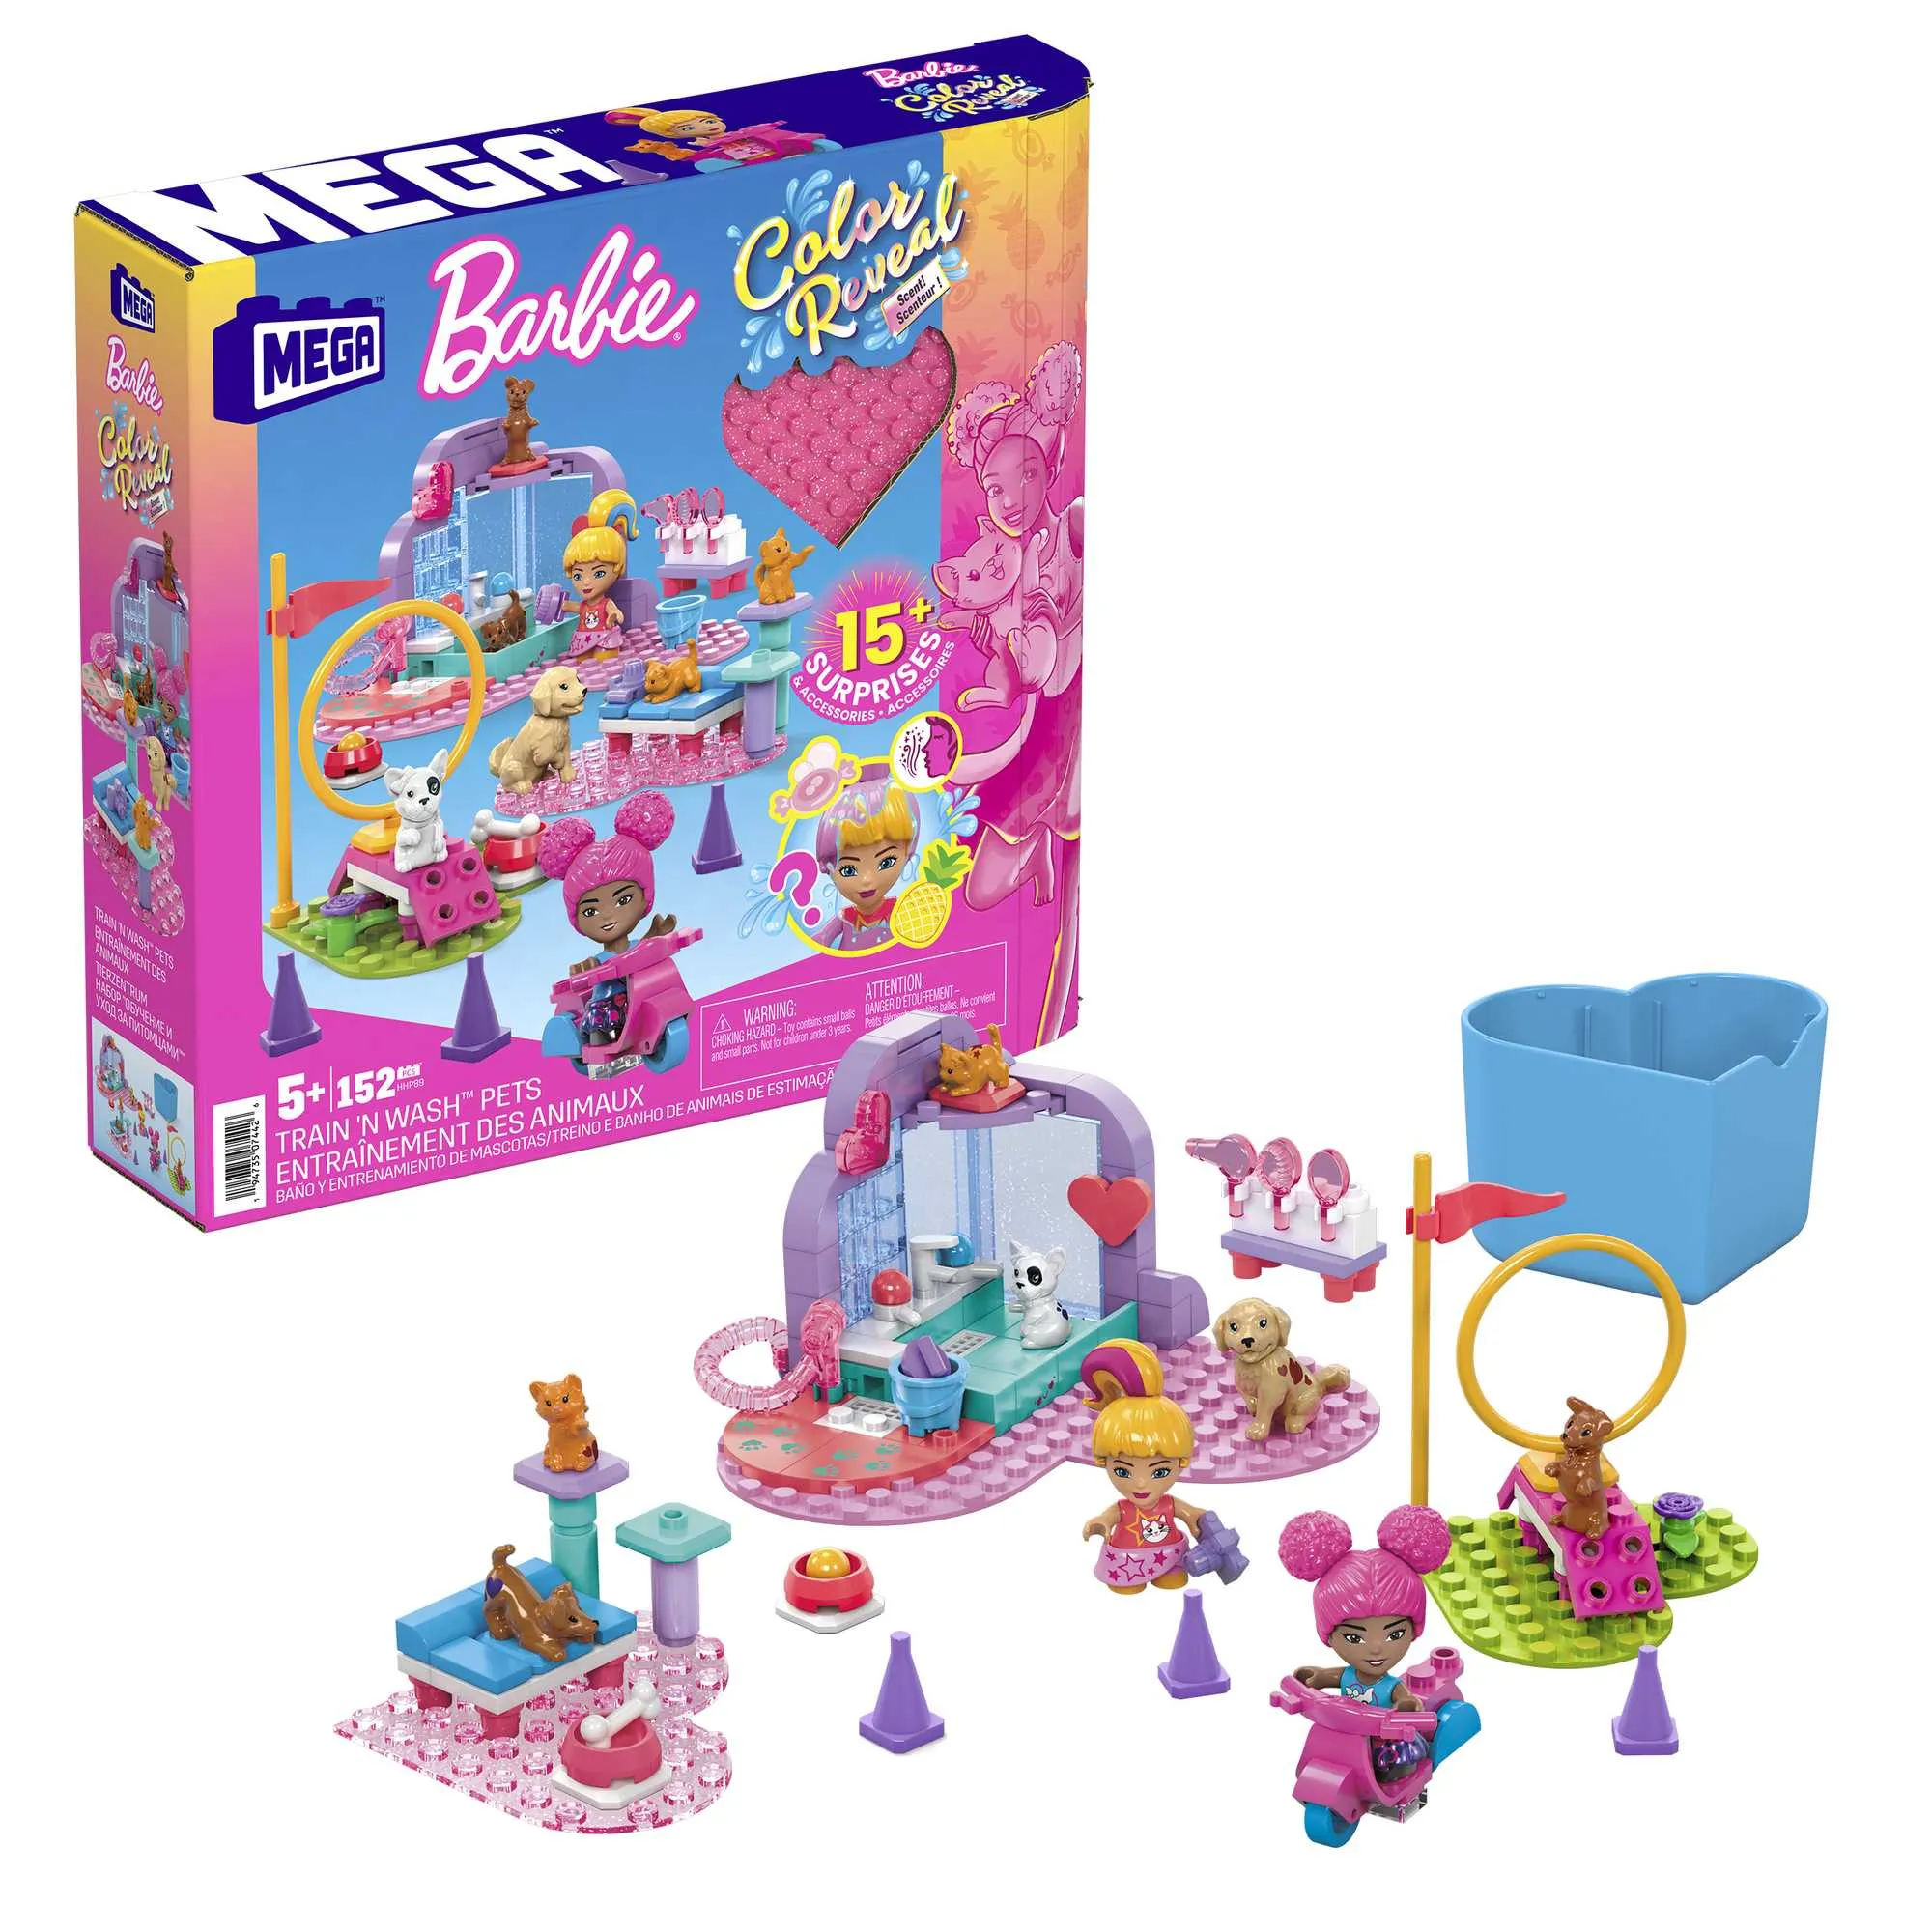 Barbie™ Color Reveal Bauspielzeug, Tiere zum Trainieren und Waschen mit 2 kleinen Barbie-Puppen, Zubehör, 6 Tieren, Farbwechsel und 15 Überraschungen, Konstruktionsspielzeug ab 5 Jahren Gallery